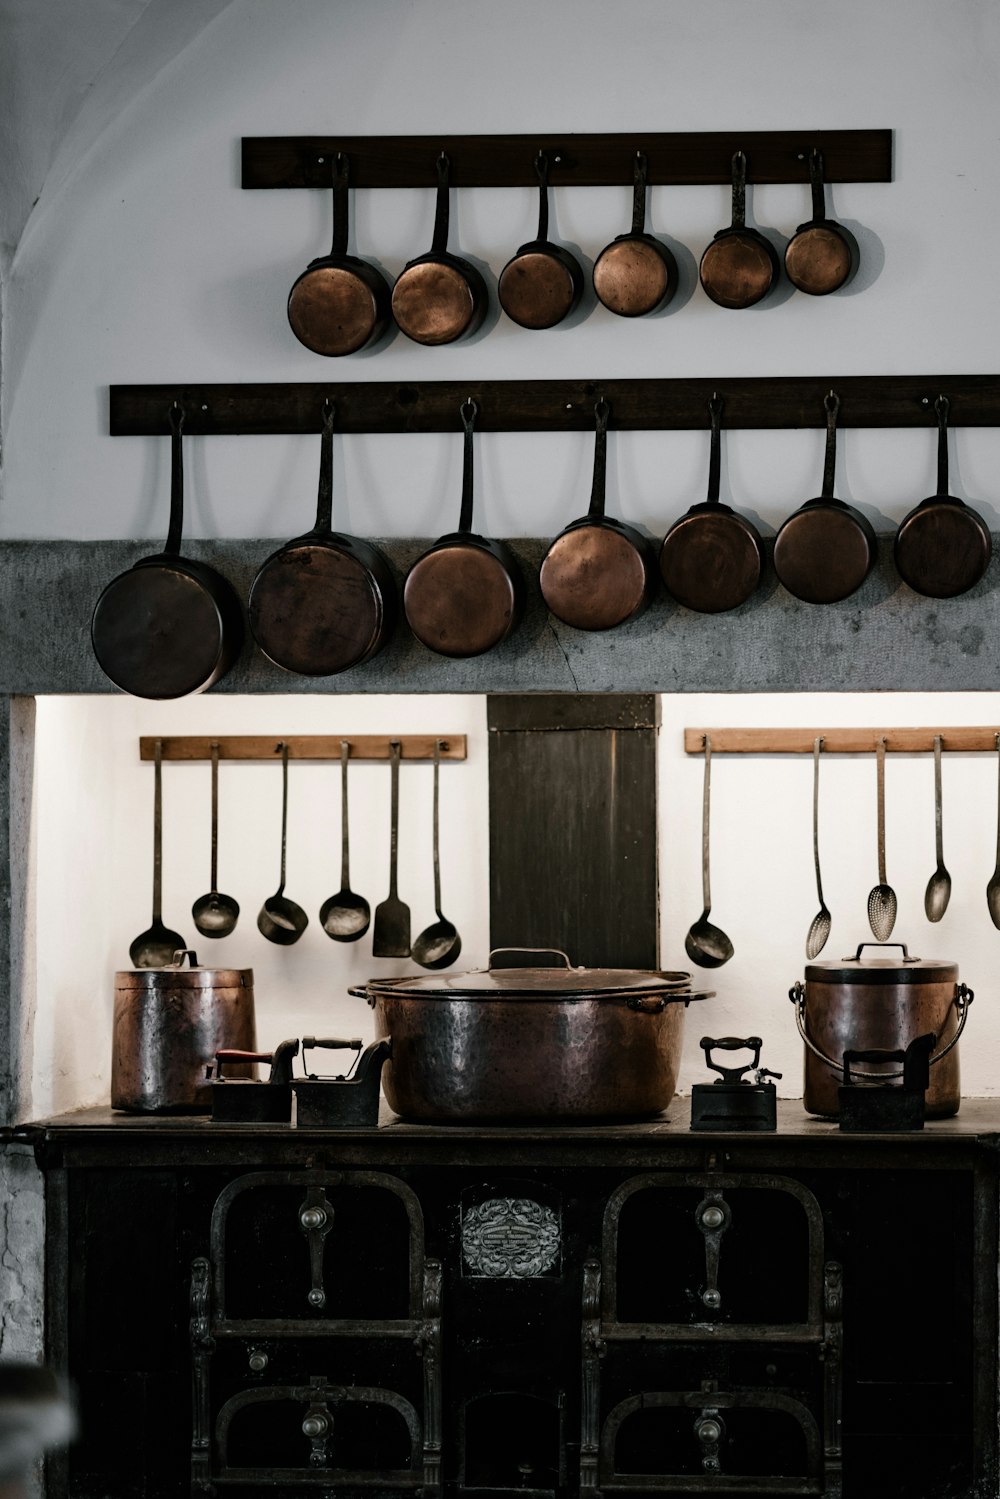 黒い鋳鉄製のストーブの上にぶら下がっているさまざまな調理鍋とフライパン